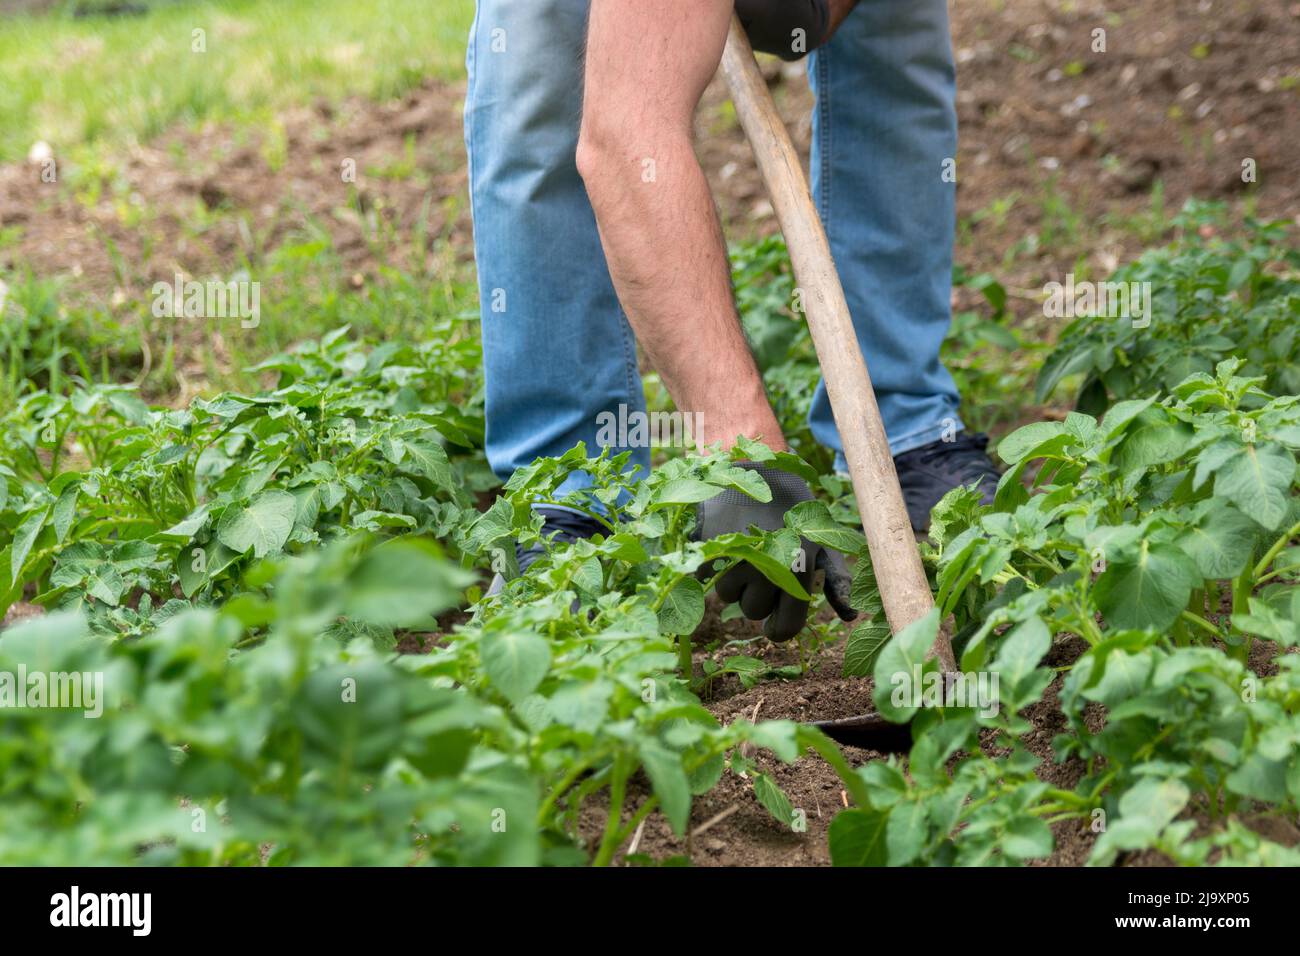 Coltivatore che usa una zappa per scavare la terra di suolo per coltivare schegge di albero di patate dolci in un campo agricolo. Agricoltura e giardino concetto Foto Stock